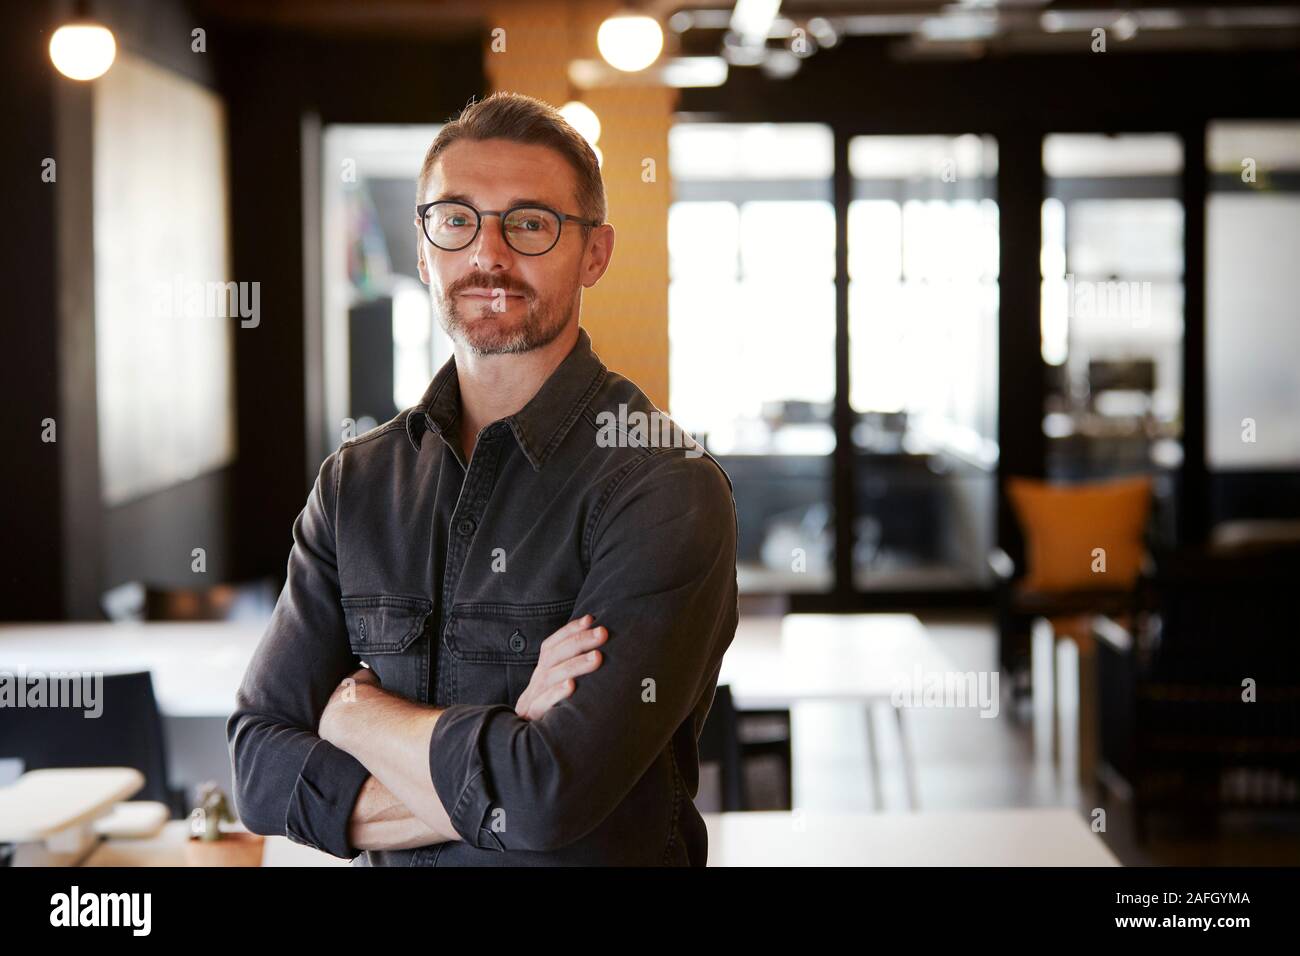 Homme de race blanche d'âge moyen portant des lunettes créative dans un bureau permanent à la recherche d'appareil photo, jusqu'à la taille Banque D'Images